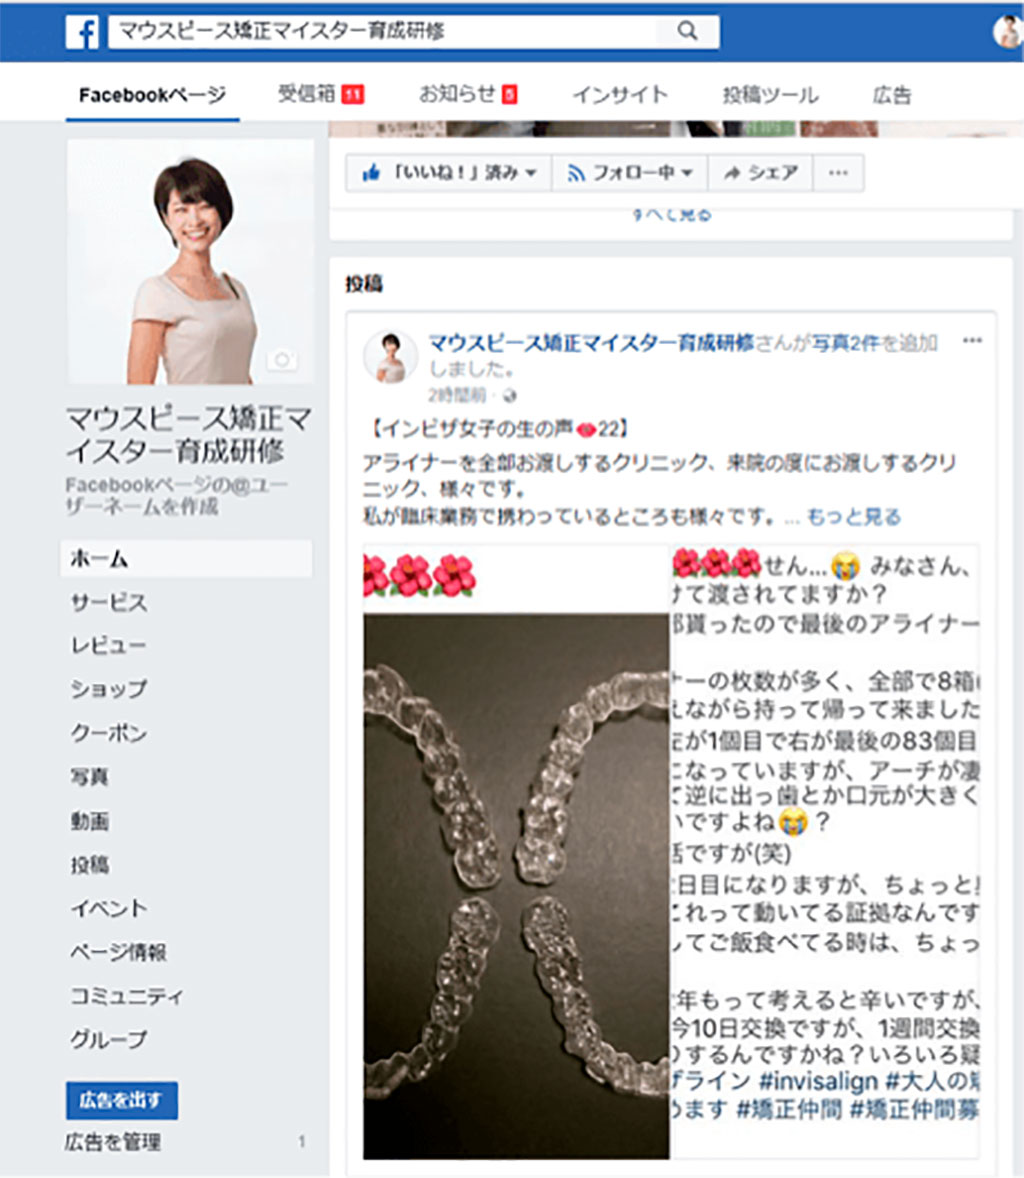 穴沢有沙さんのFacebookページはこちら